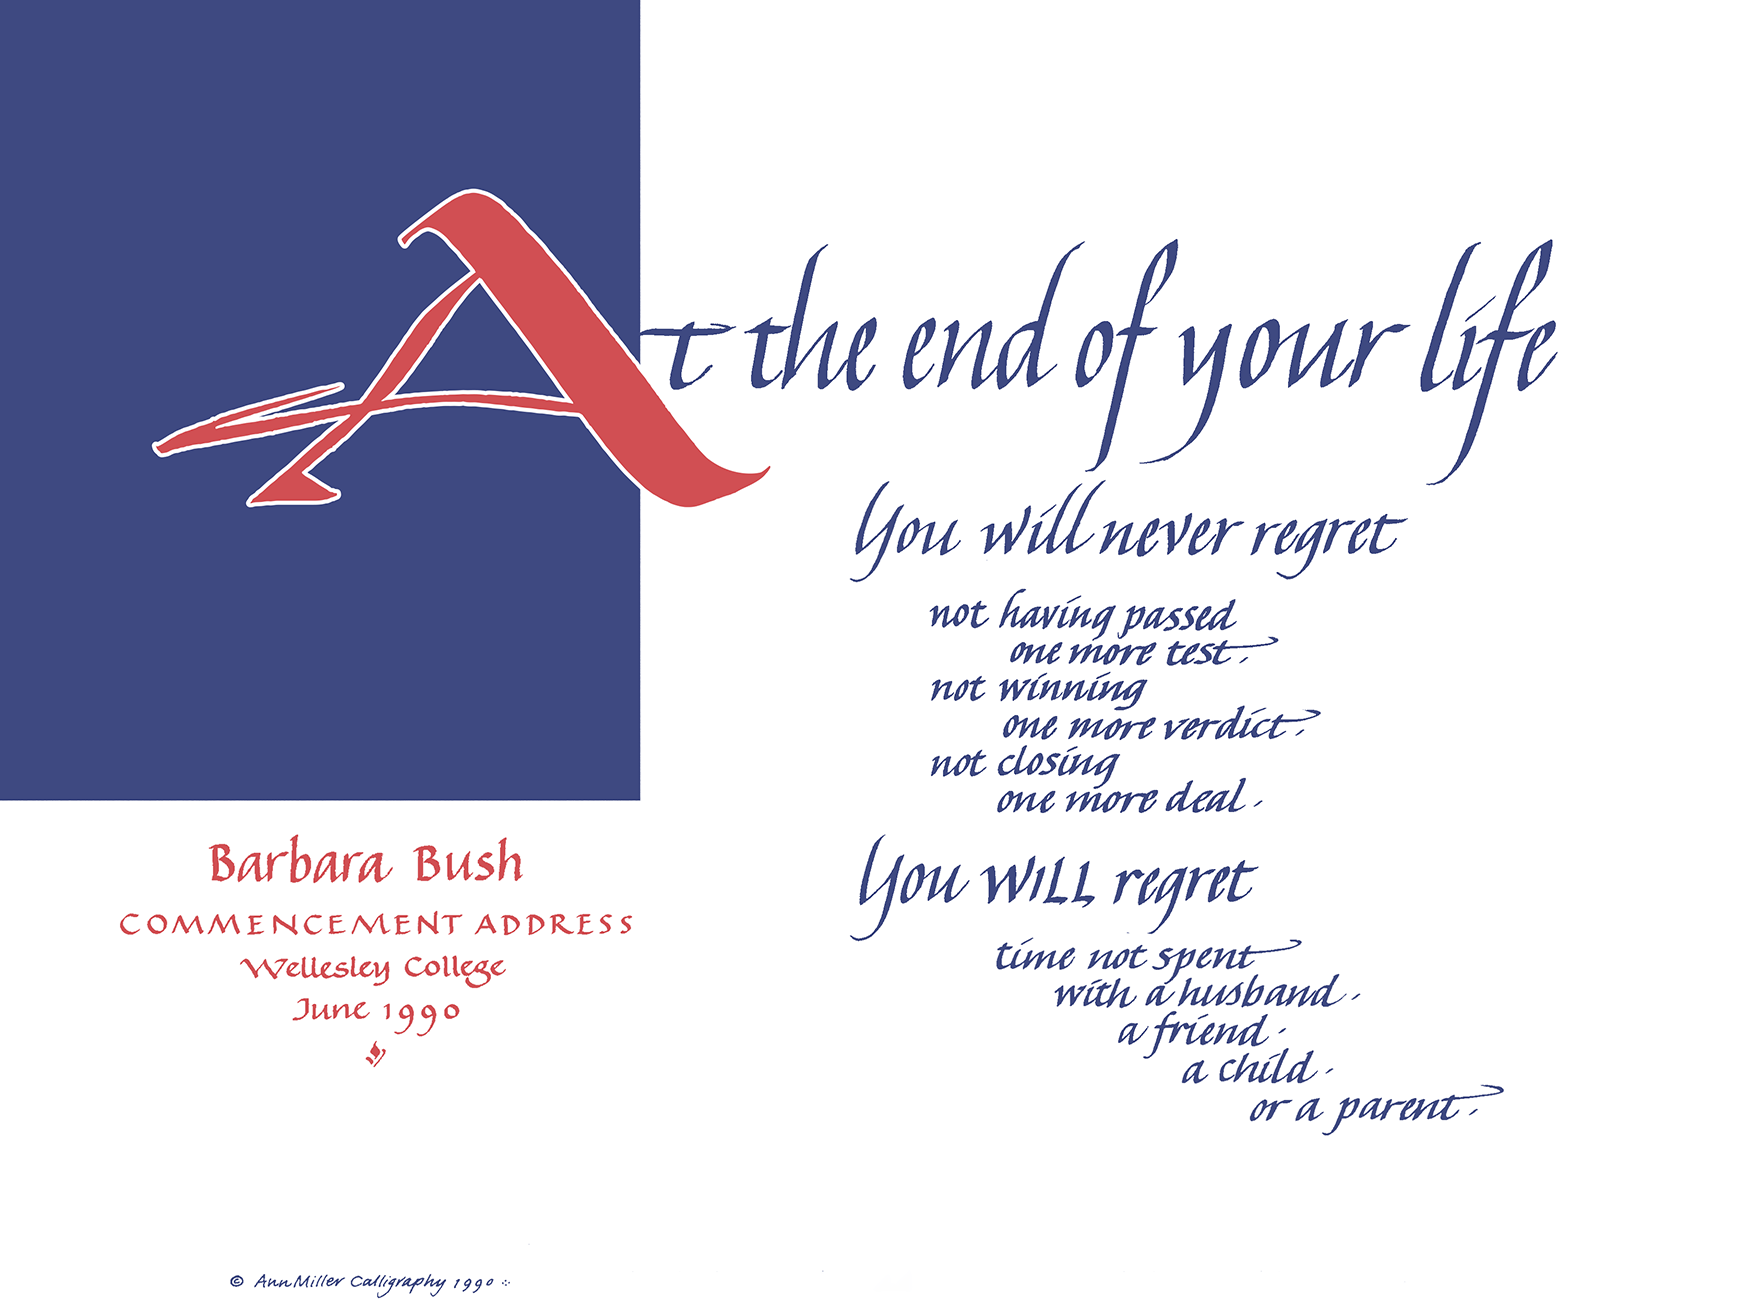 No Regrets - Barbara Bush Speech